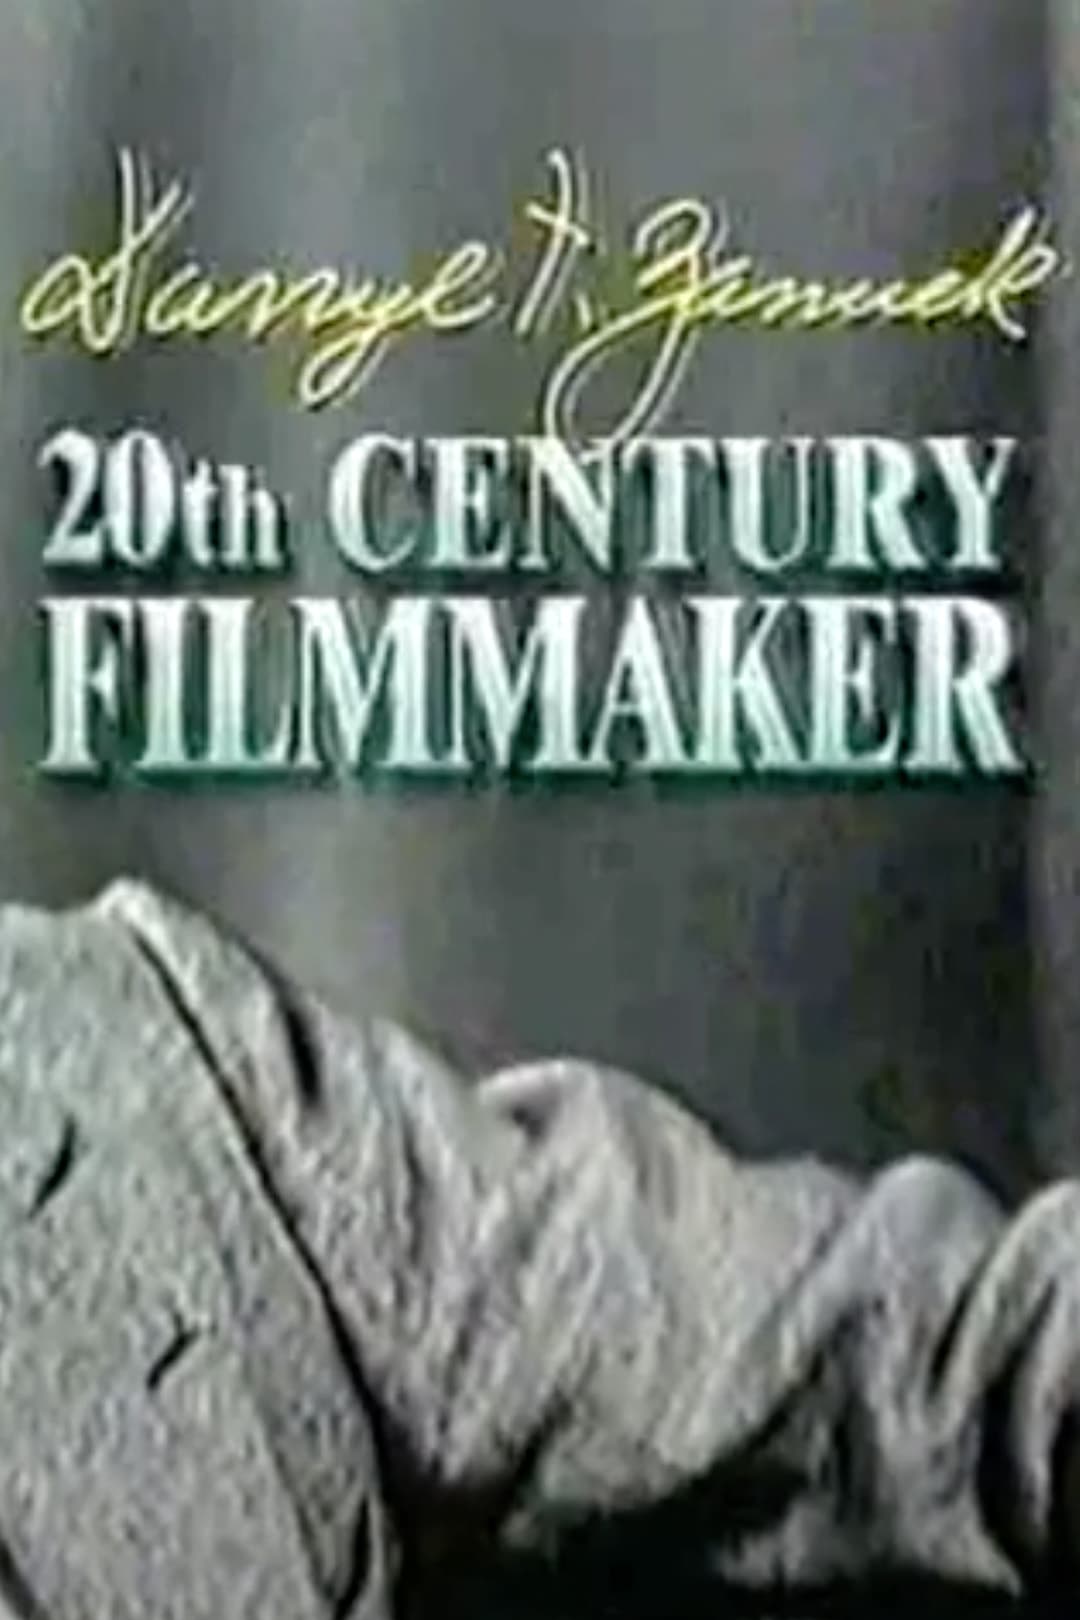 Darryl F. Zanuck: 20th Century Filmmaker